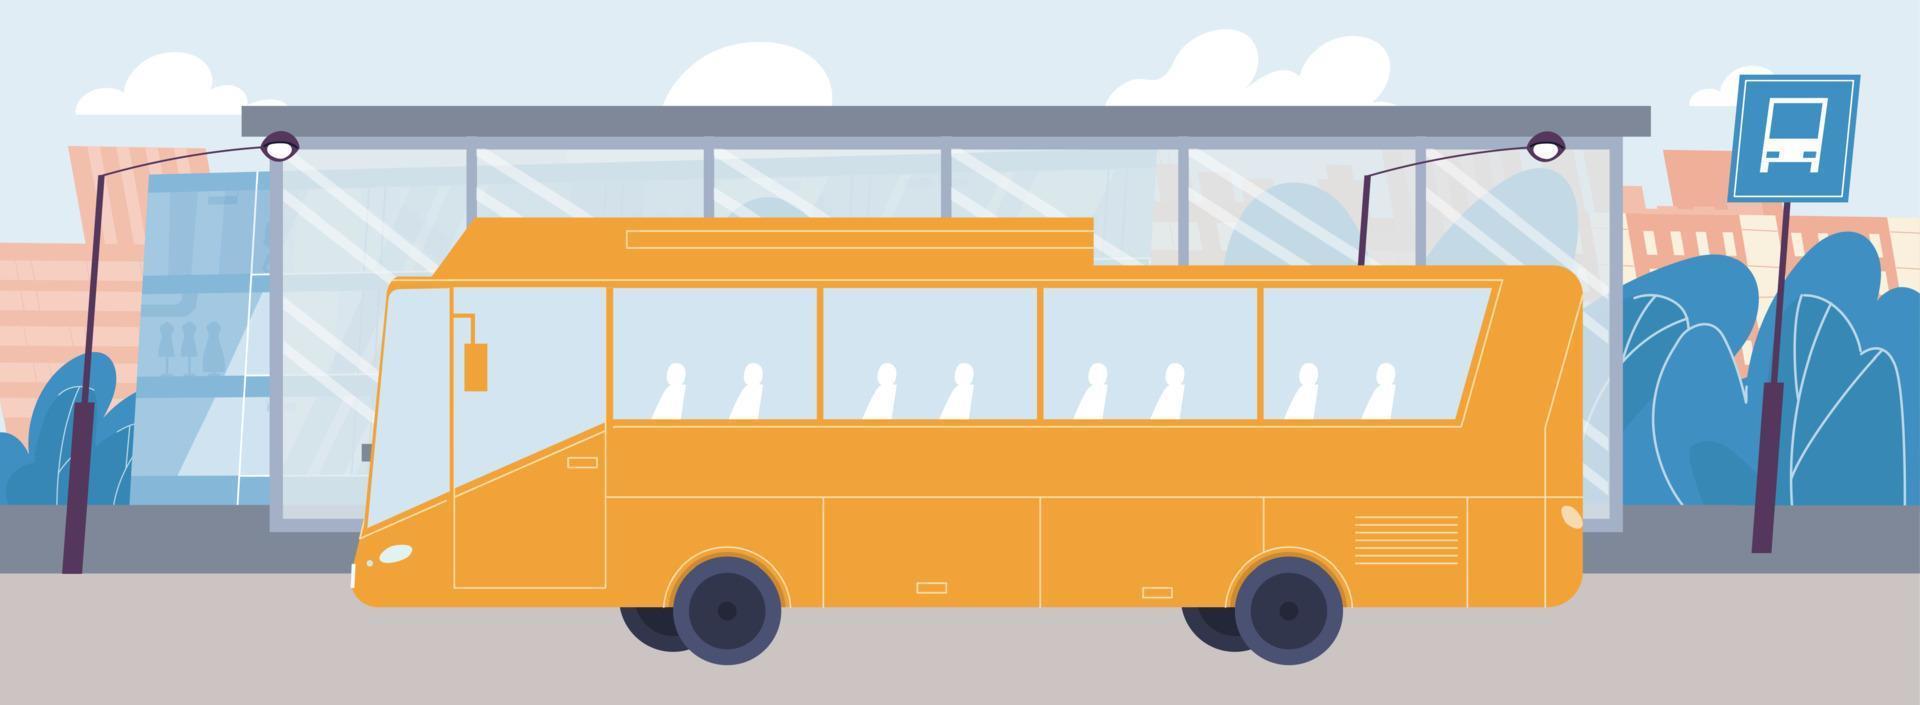 autobus urbano vuoto che arriva alla fermata del trasporto pubblico vettore